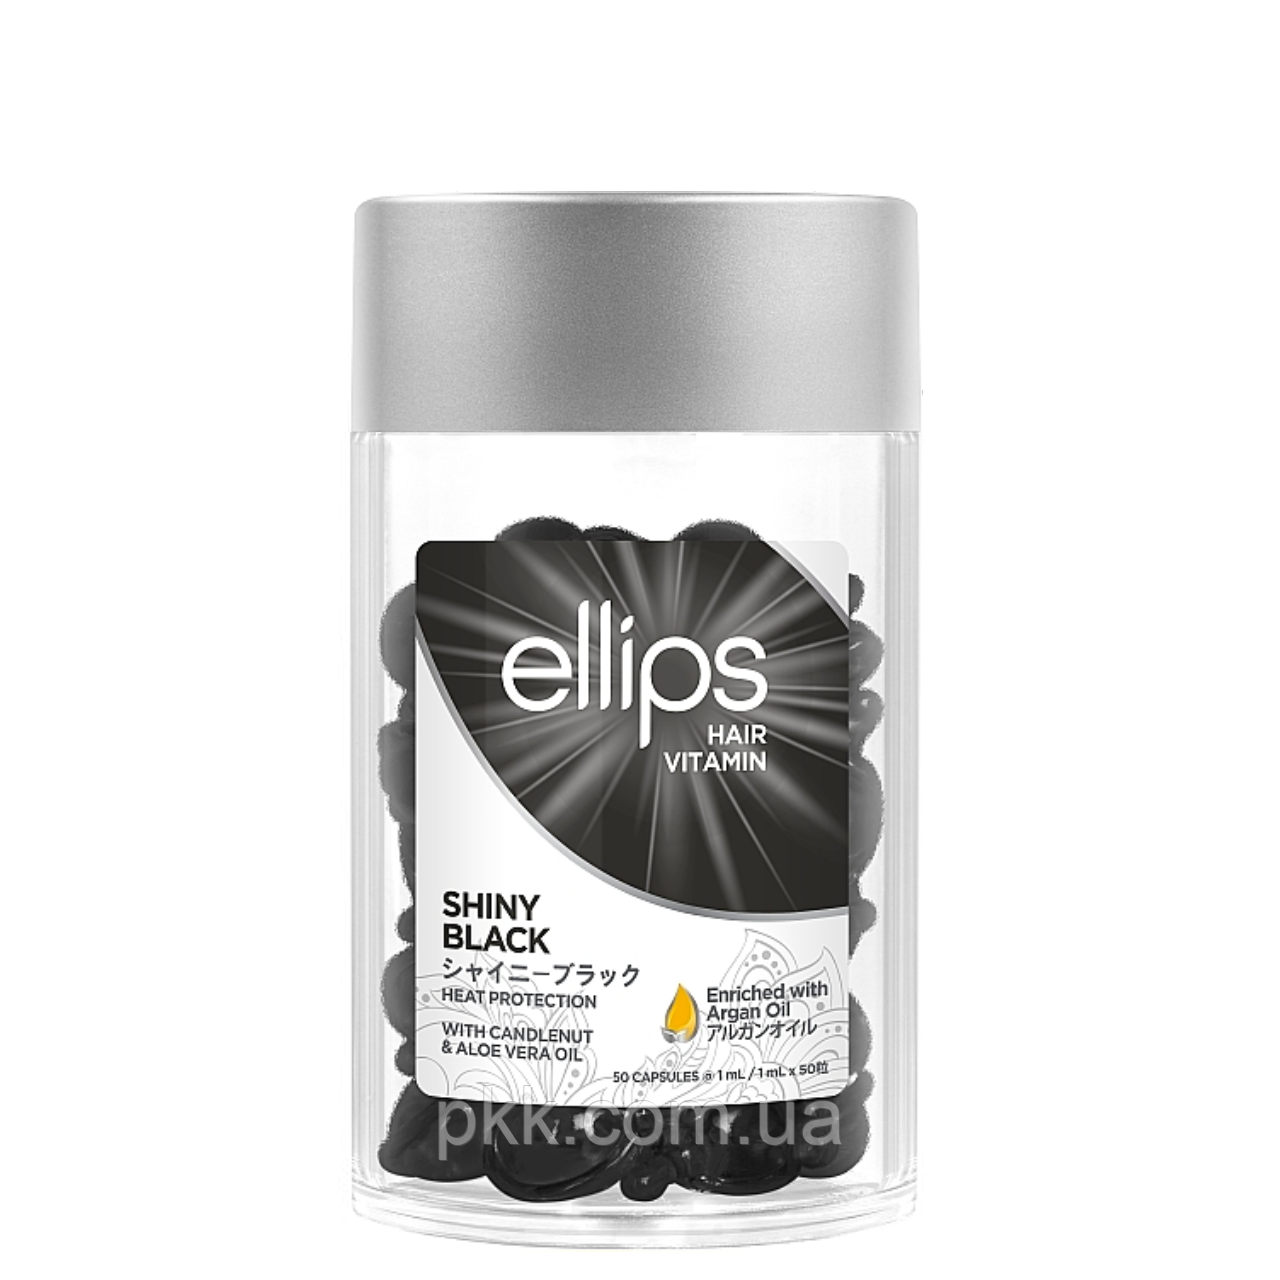 Вітаміни для волосся Ellips Hair Vitamin Shiny Black з горіховою олією та олією алое вера 50 шт*1 мл